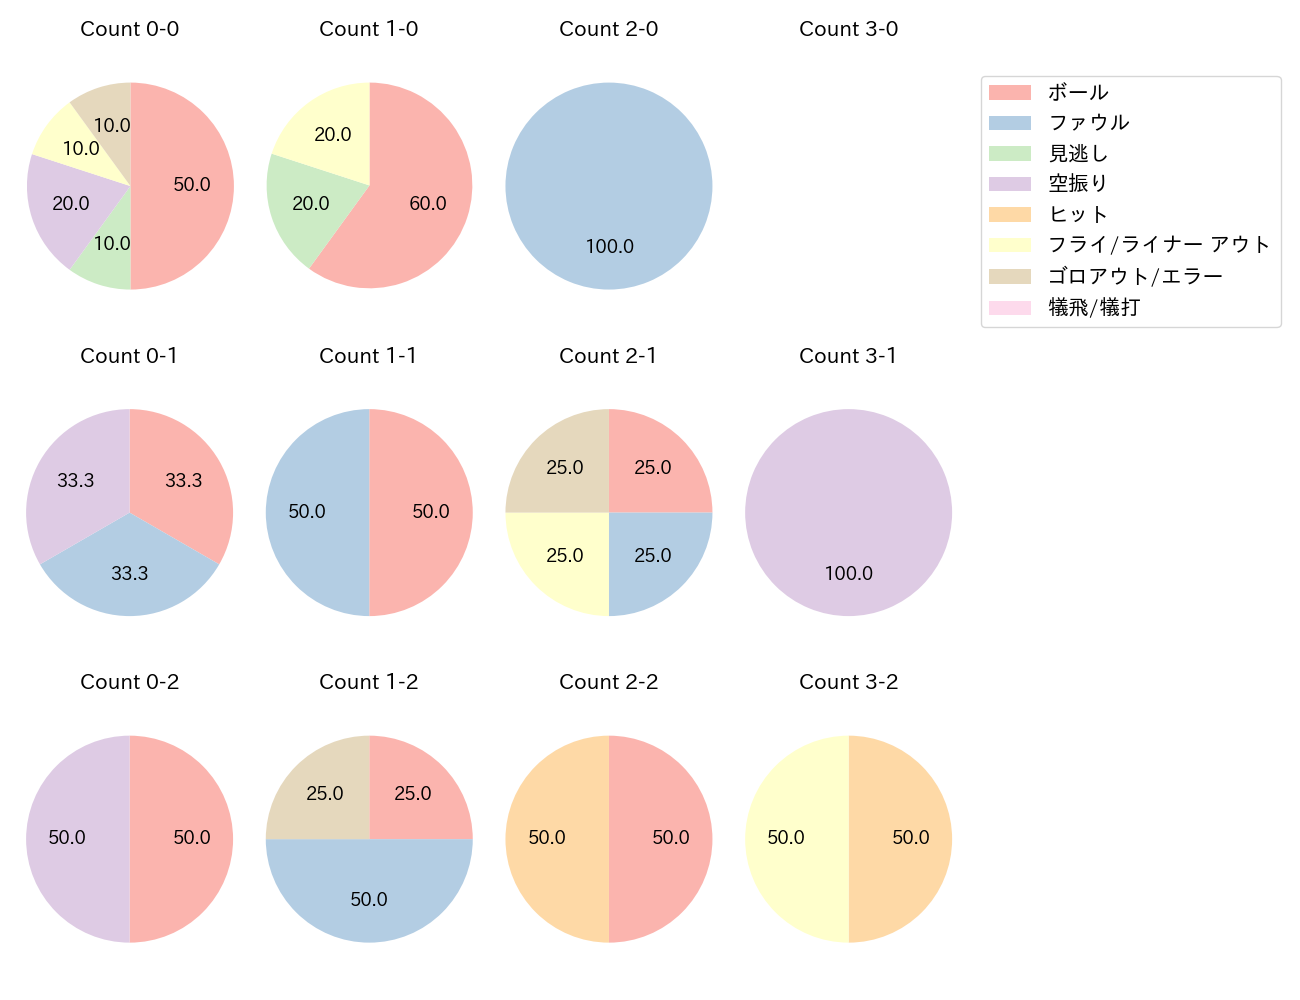 堂林 翔太の球数分布(2021年8月)